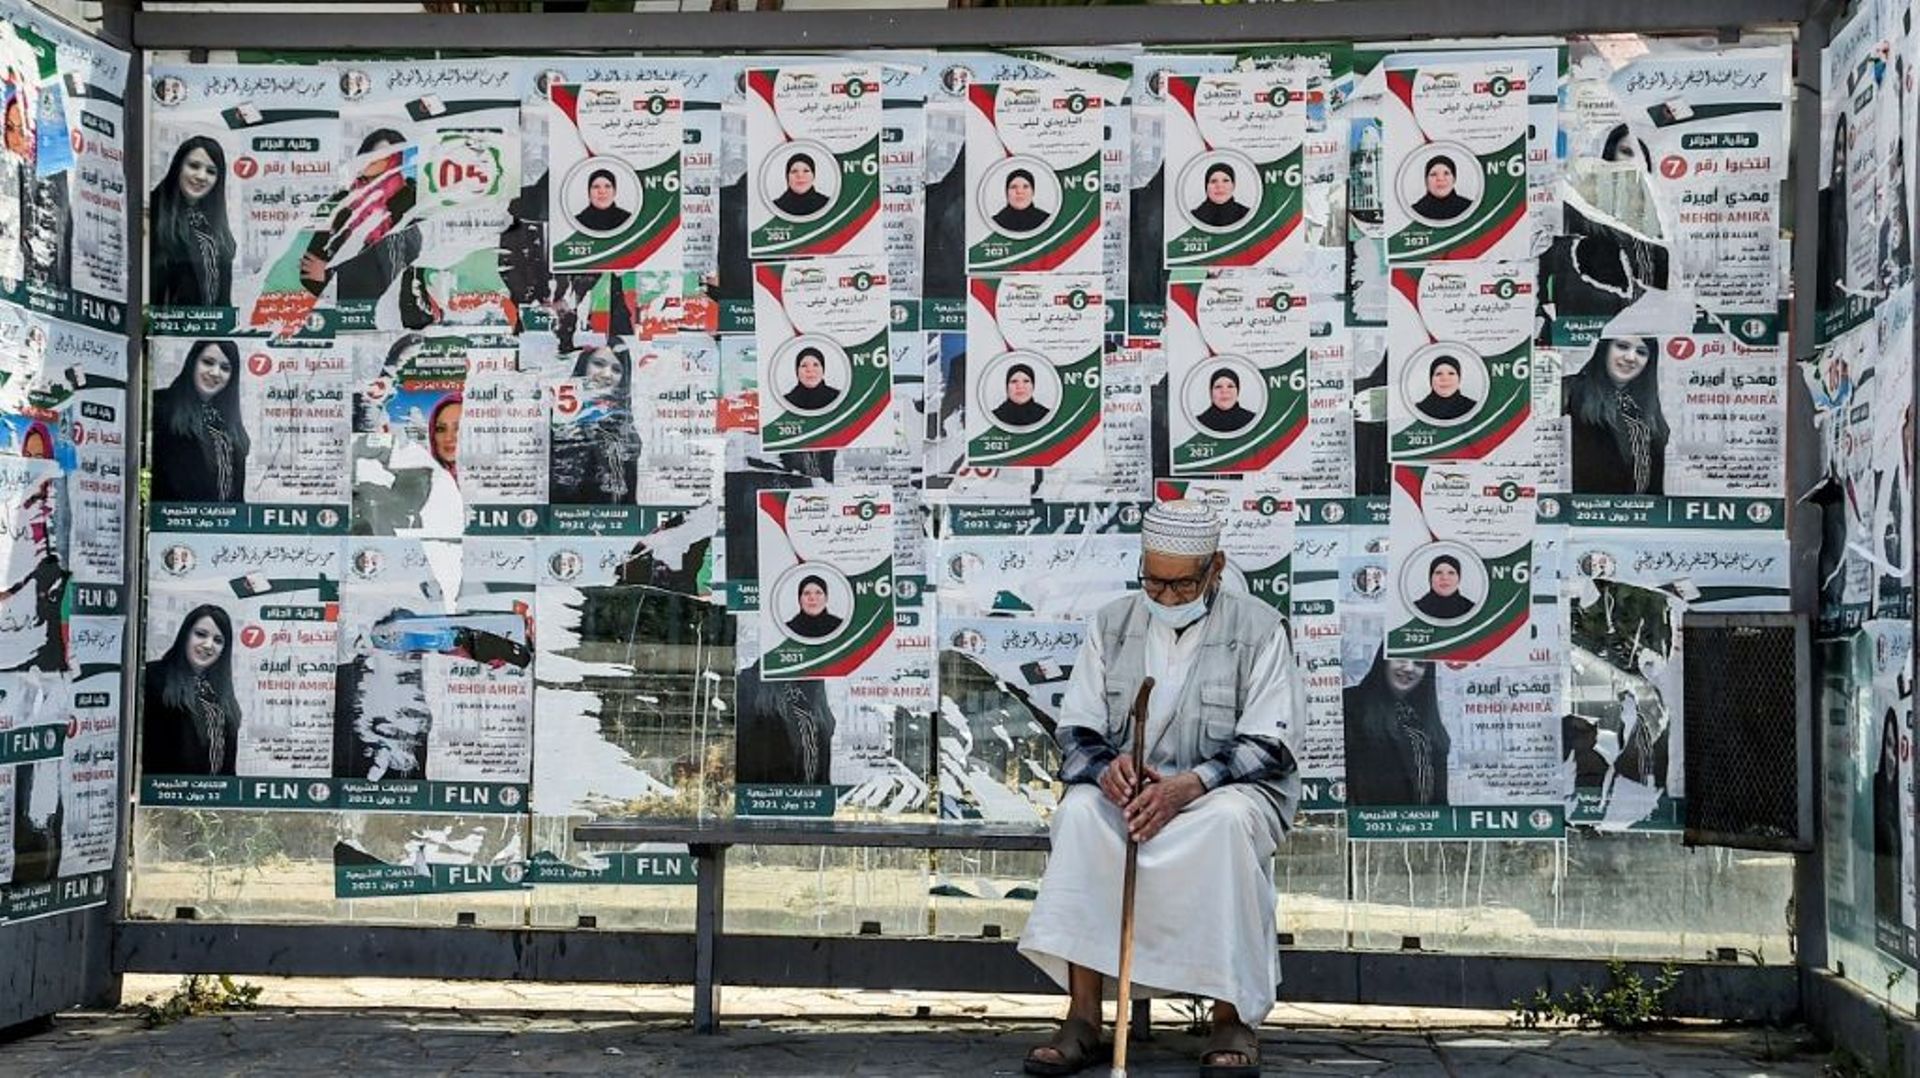 Un vieil homme attend à une station de bus recouverte d'affiches électorales, le 11 juin 2021 à Alger, à la veille des législatives